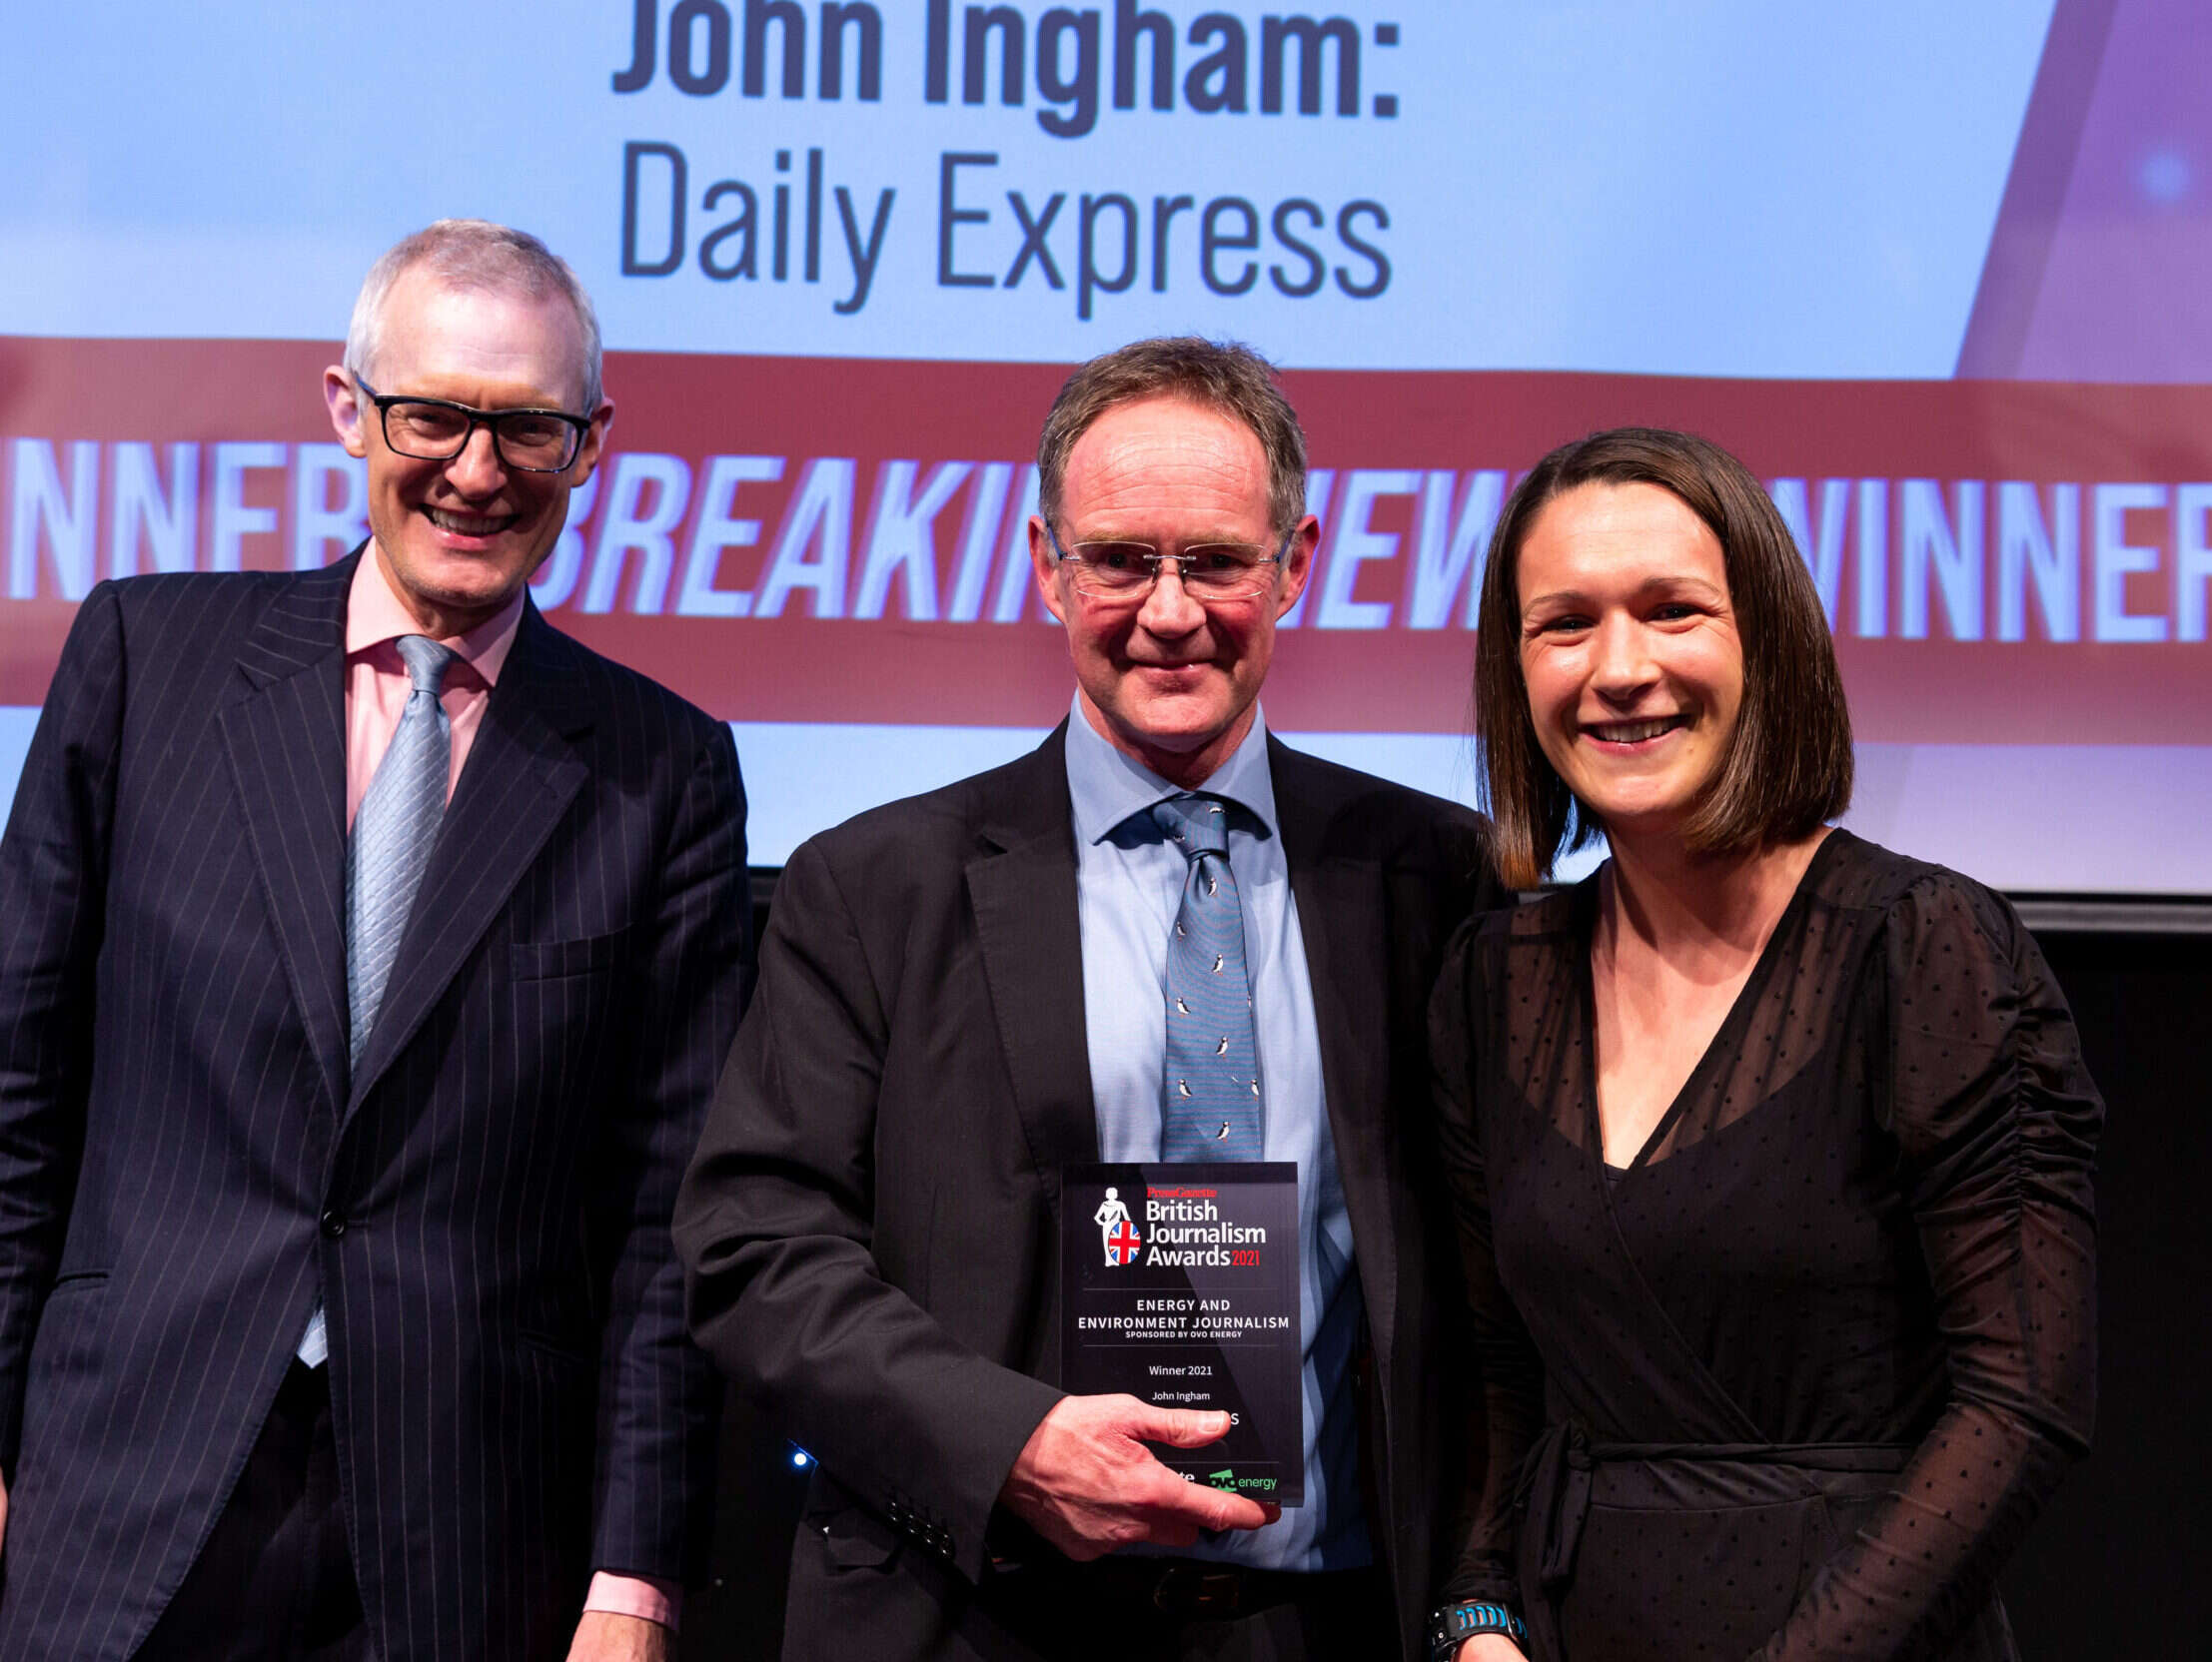 Daily Express environment editor John Ingham on winning British Journalism Award